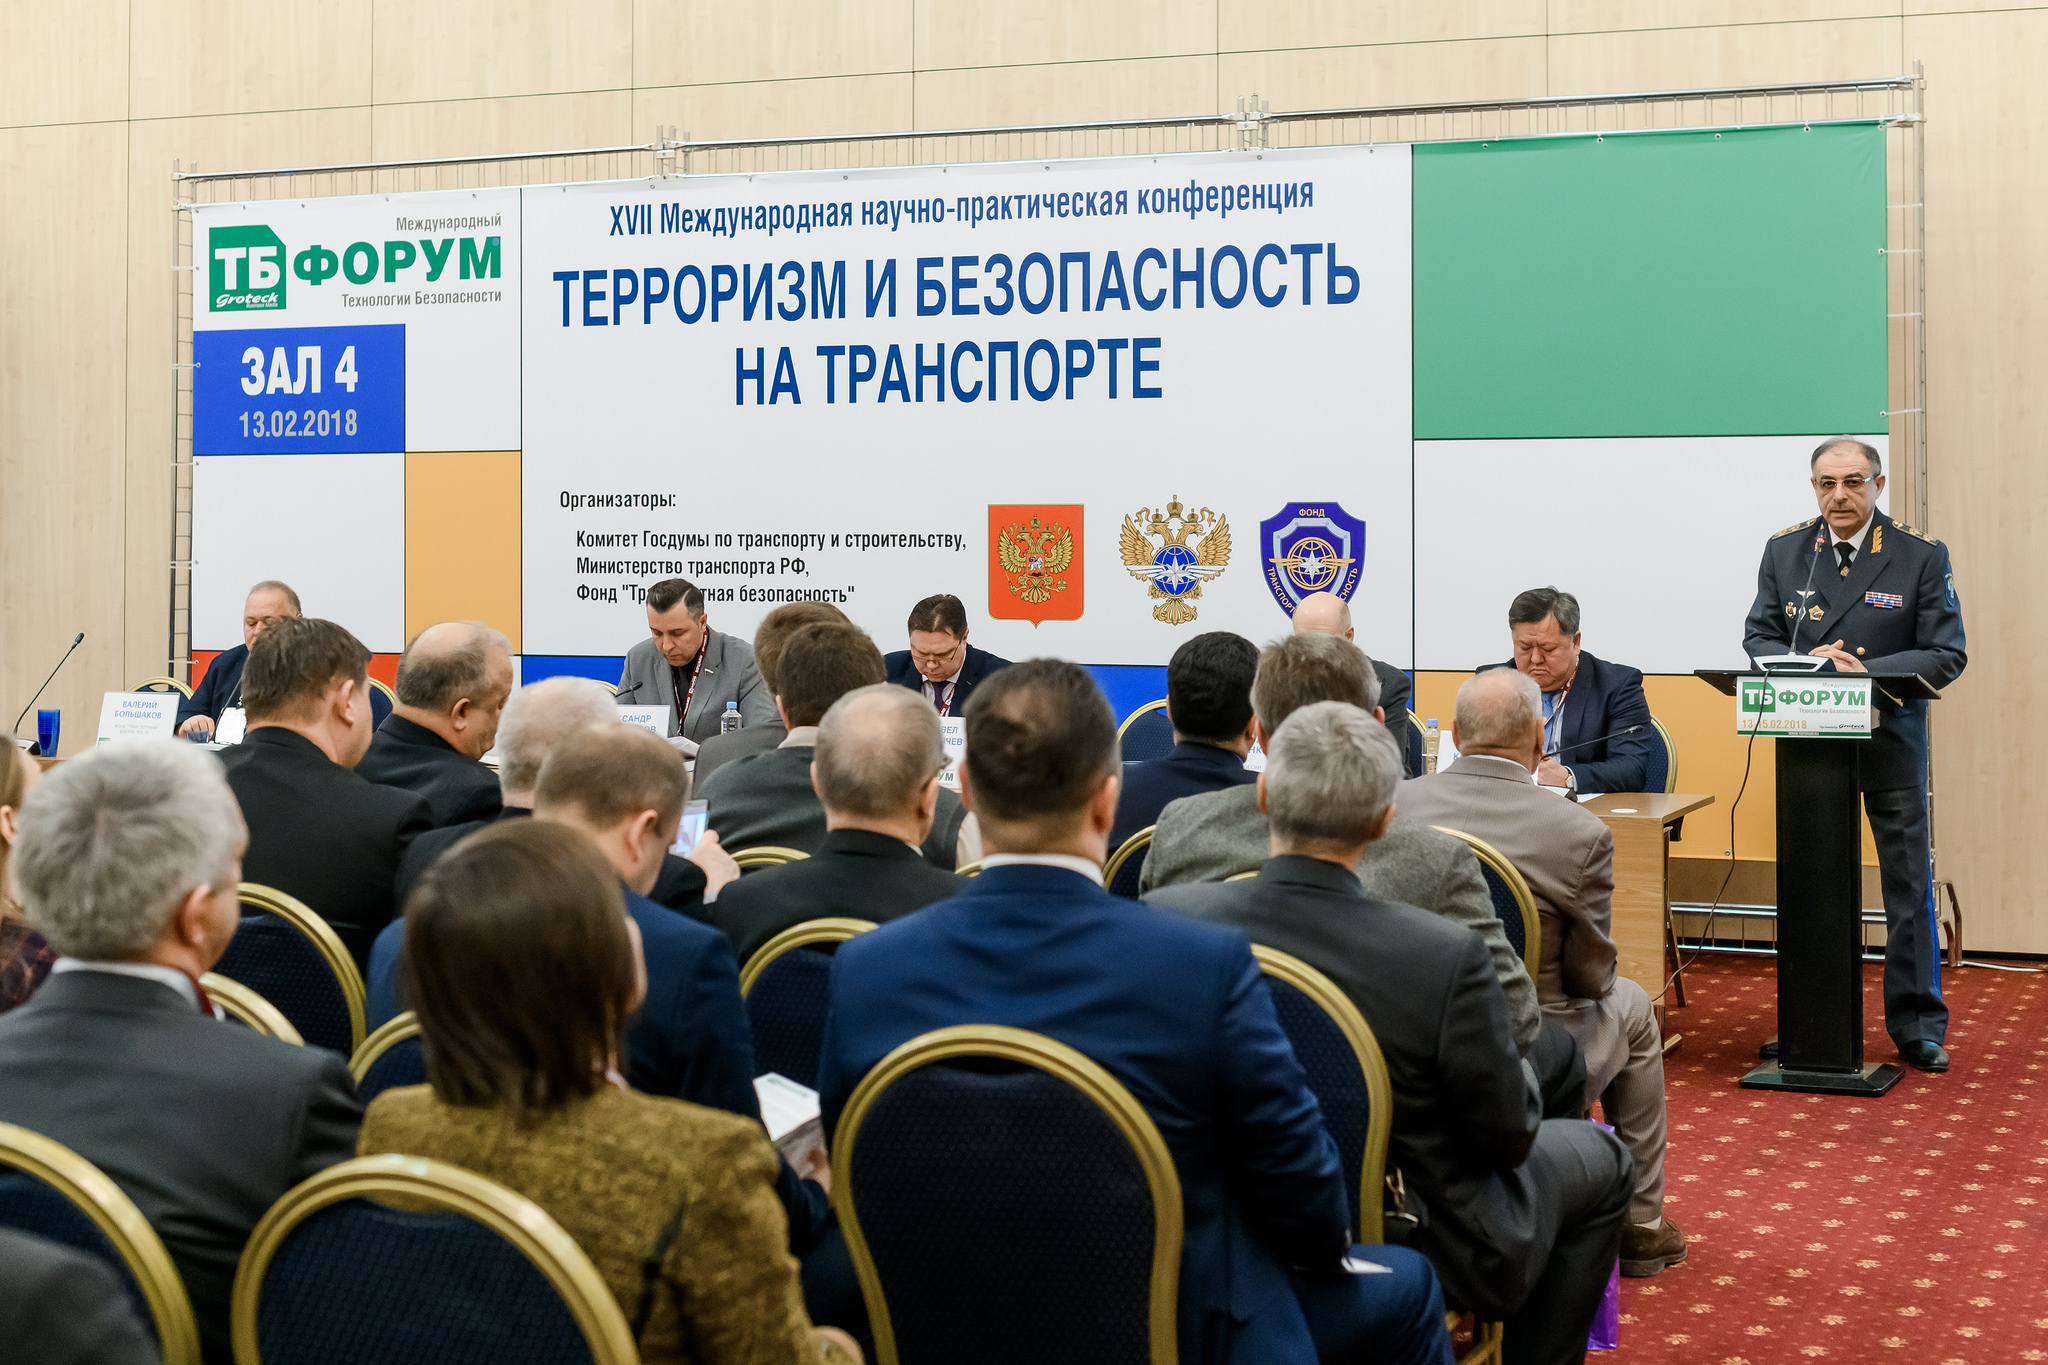 Более 800 млн рублей – на системы безопасности Кольцевой автомобильной дороги вокруг Санкт-Петербурга. И не только